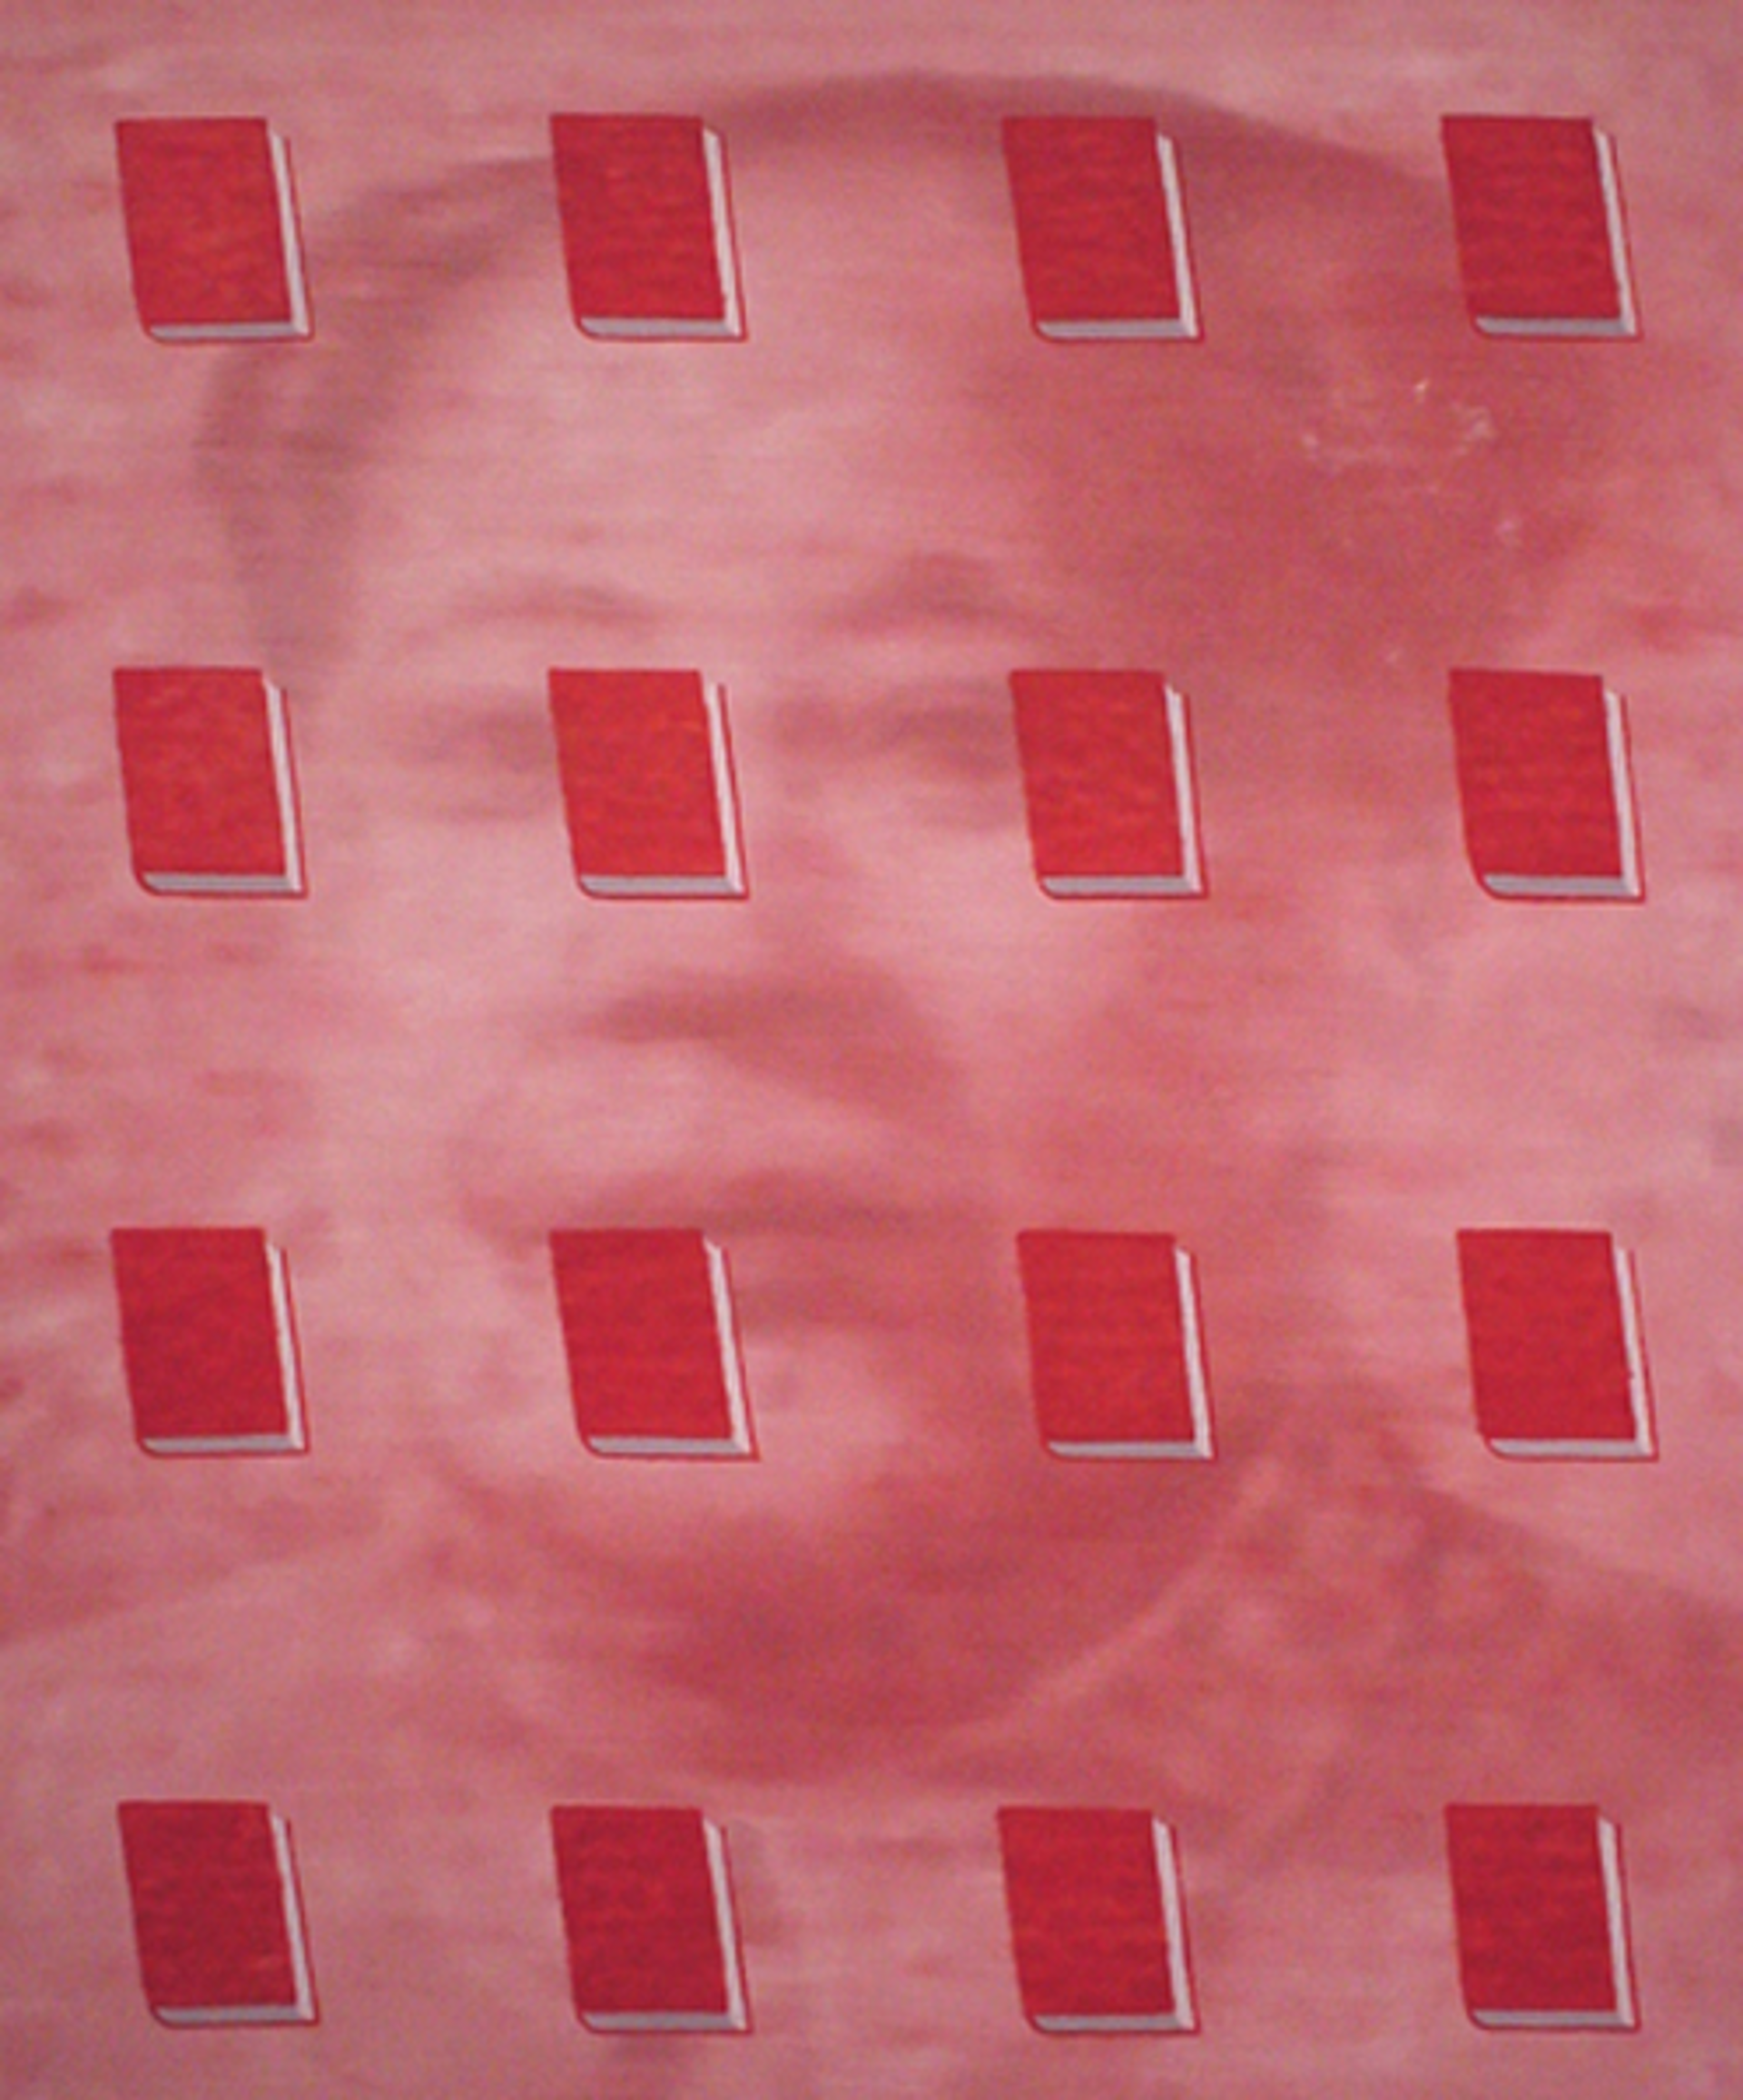 Mao #2 by Sun Zhe Zheng